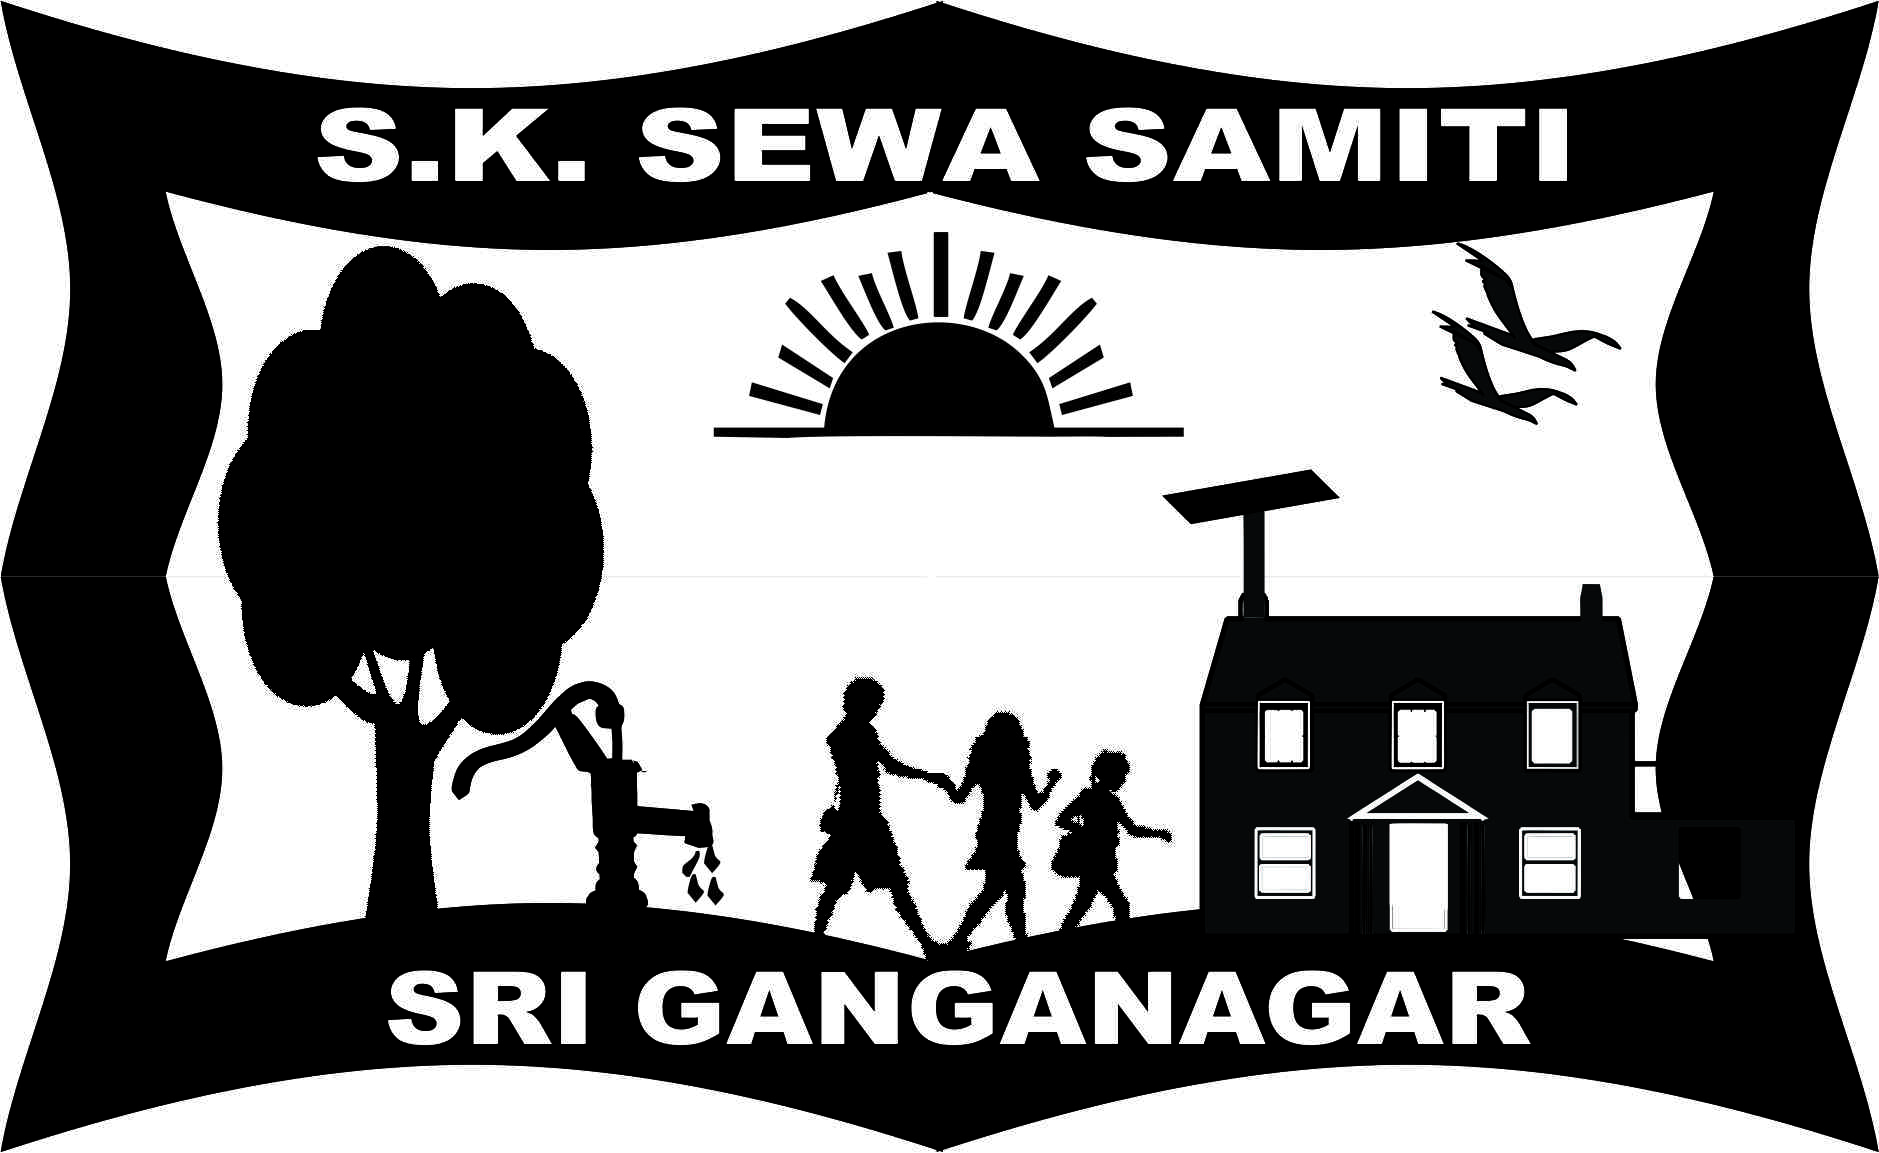 S. K. SEWA SAMITI